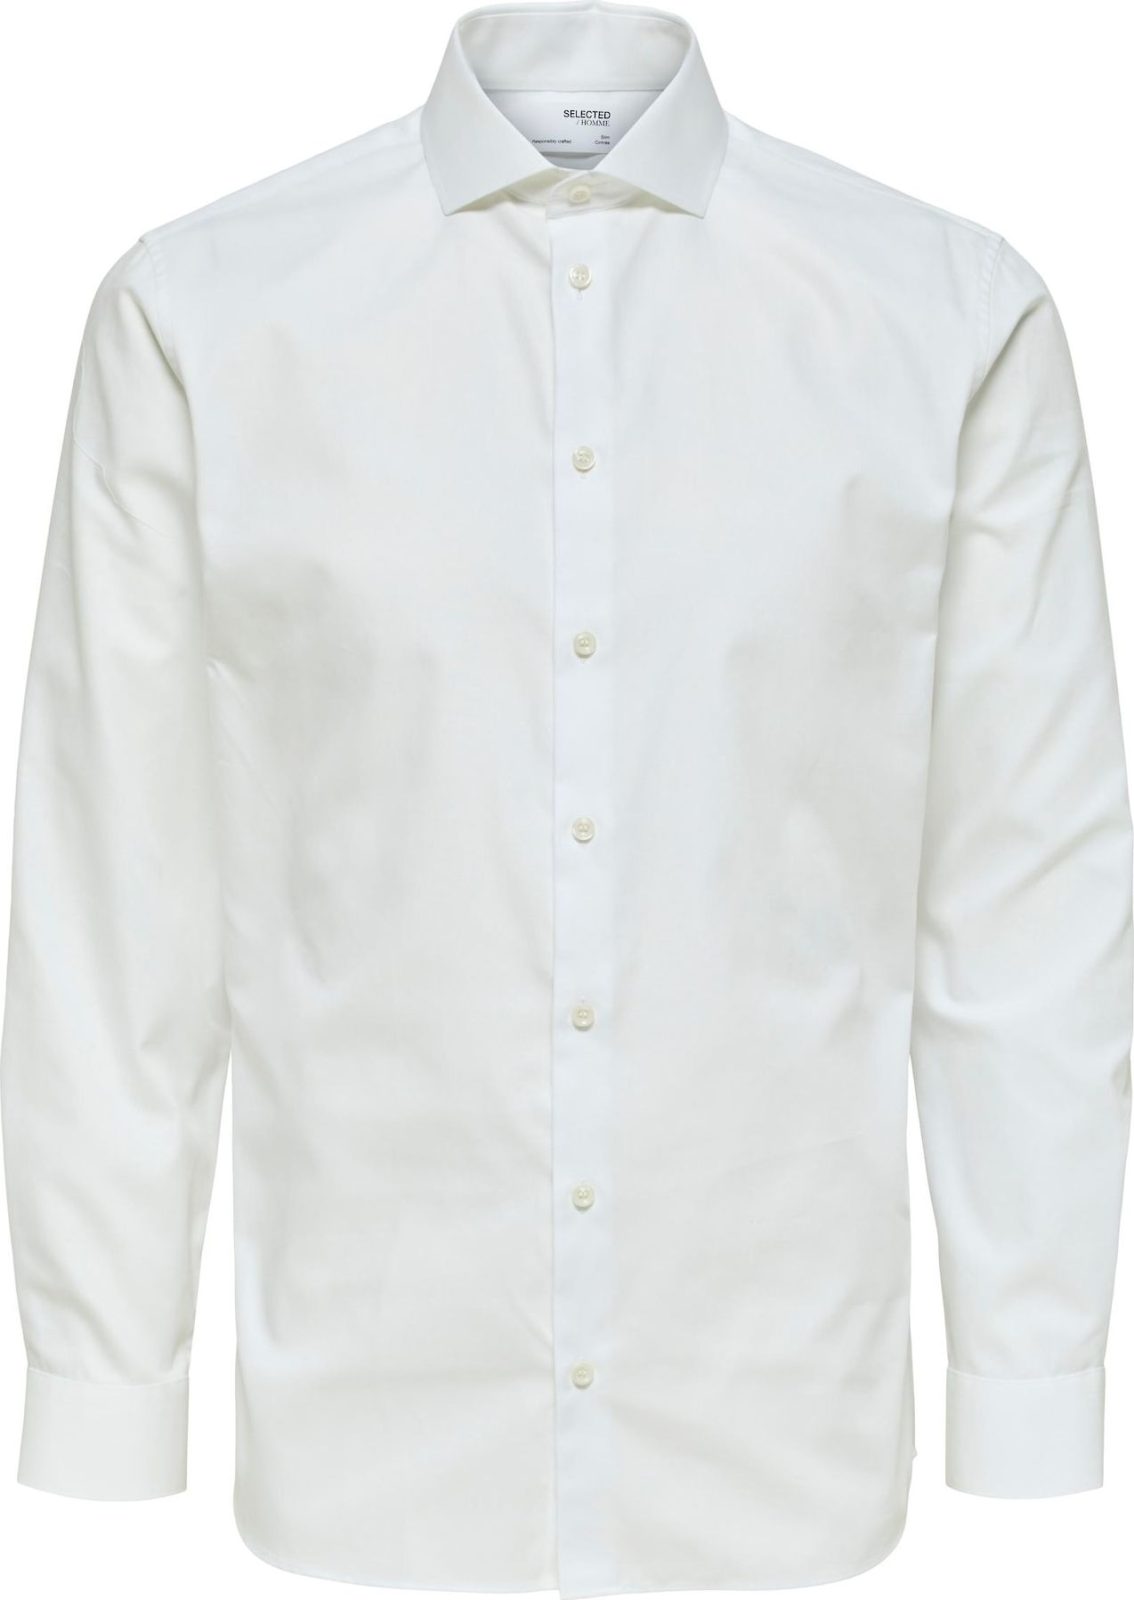 SELECTED HOMME Společenská košile 'Ethan' přírodní bílá